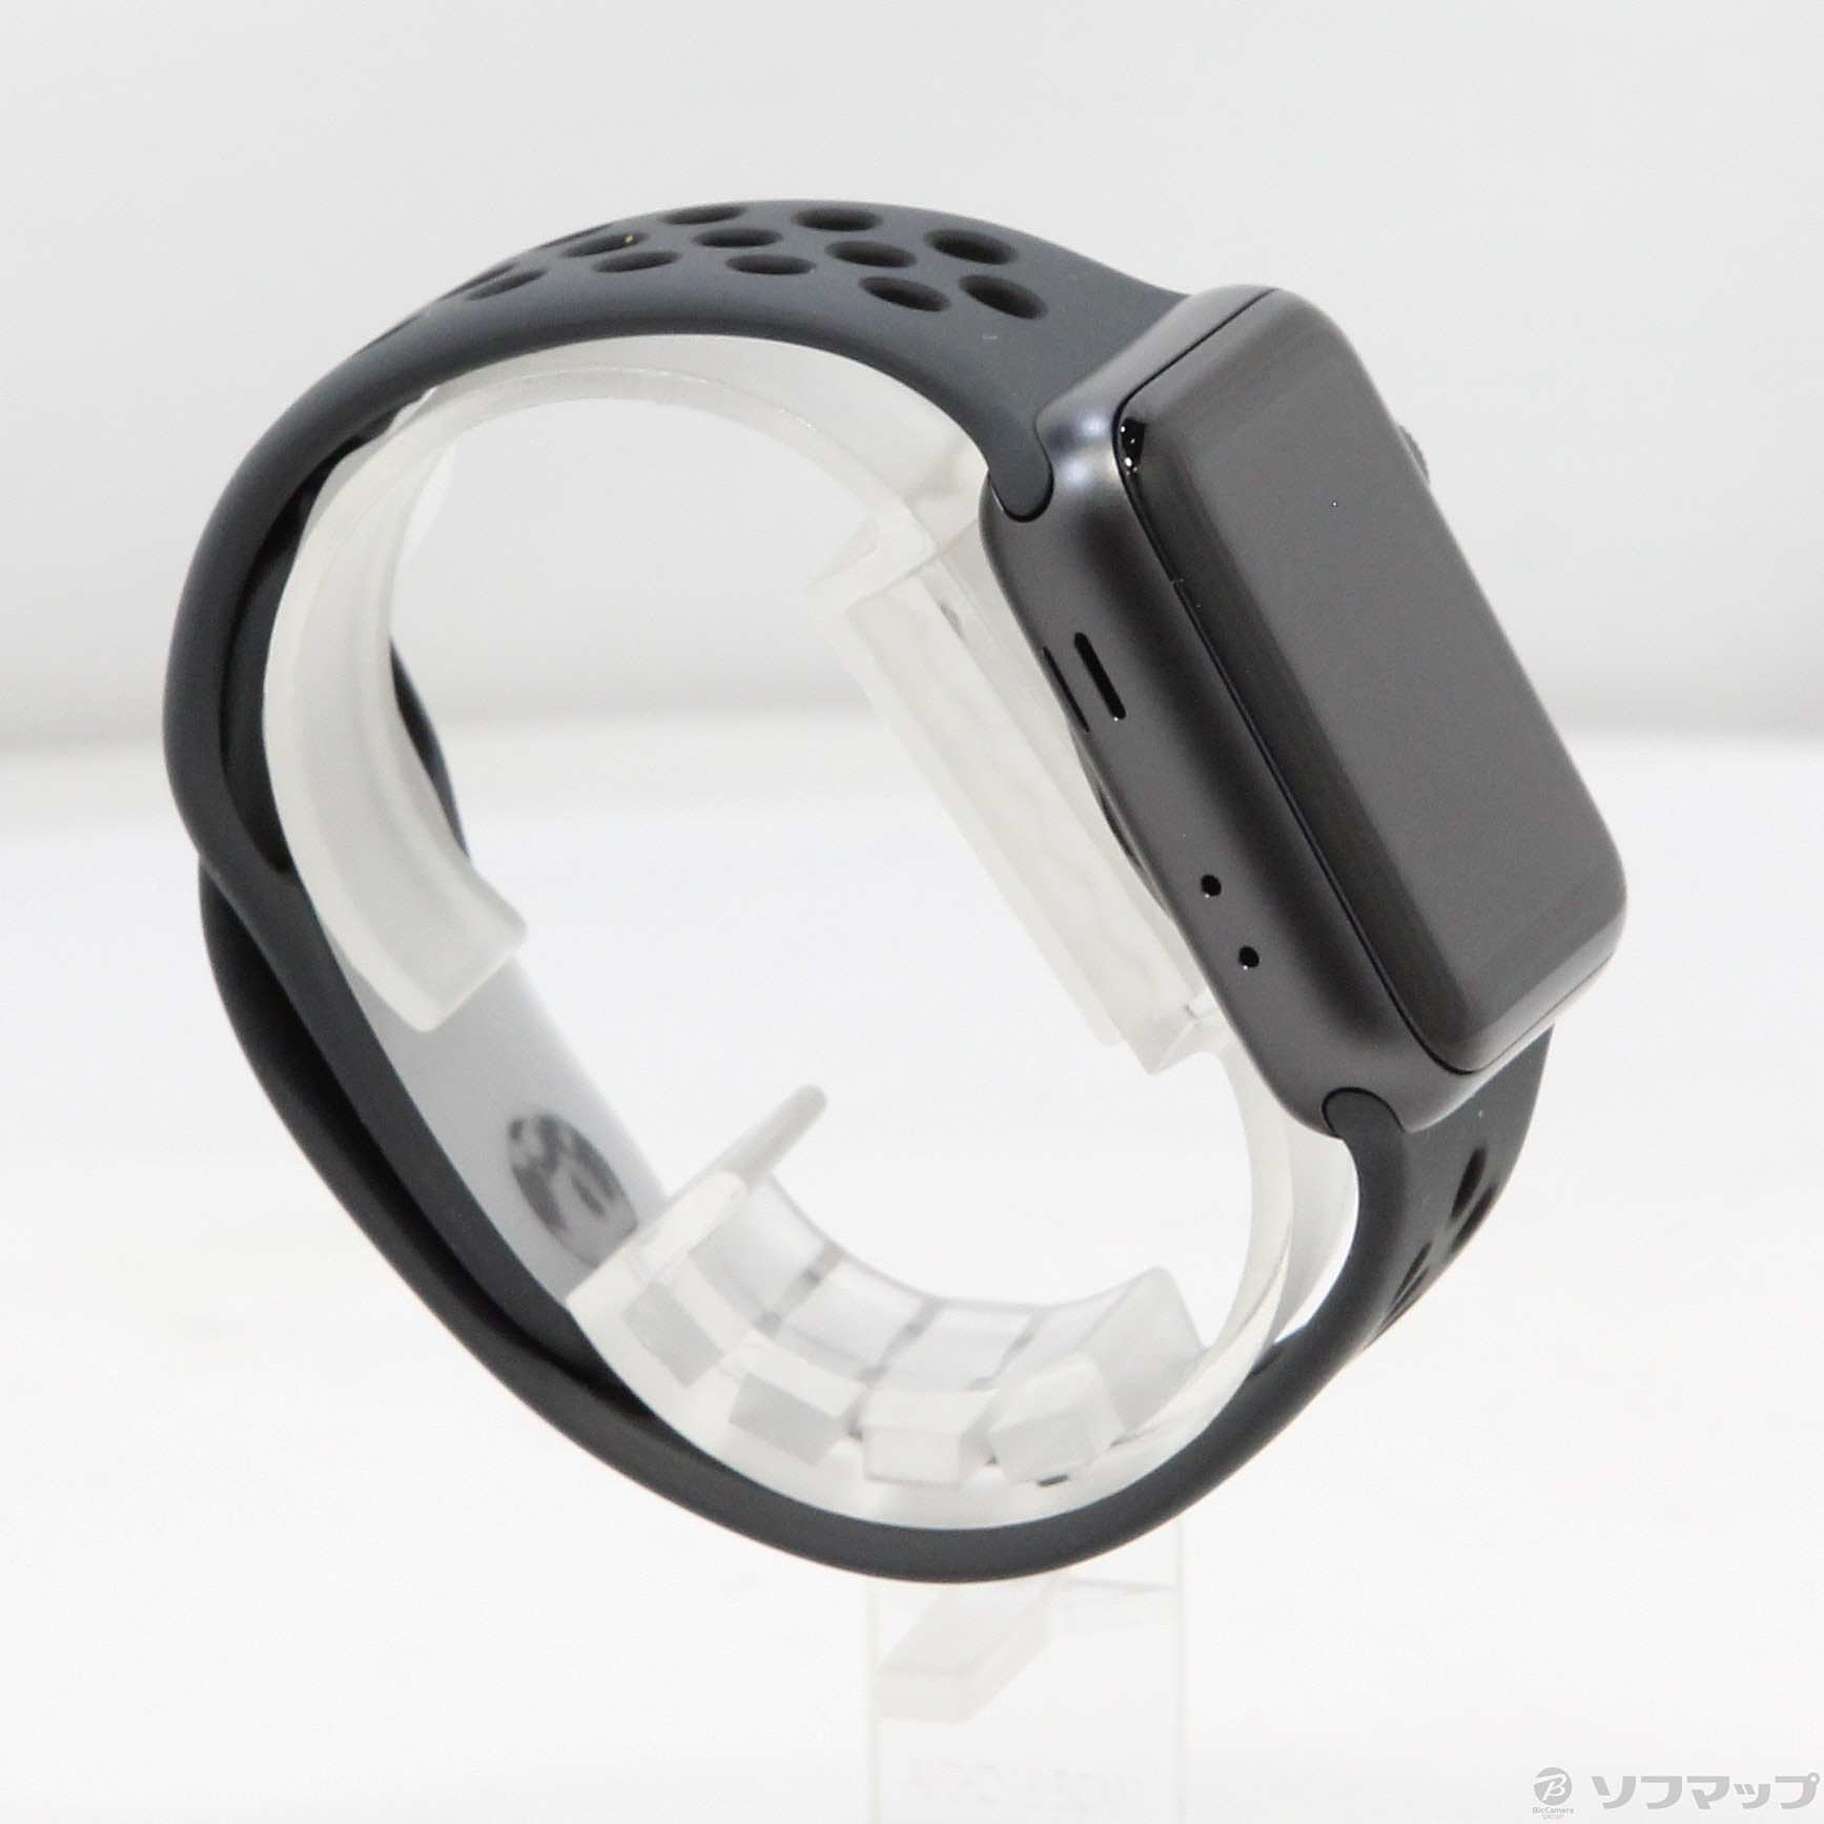 中古】Apple Watch Series 3 Nike+ GPS + Cellular 38mm スペース ...